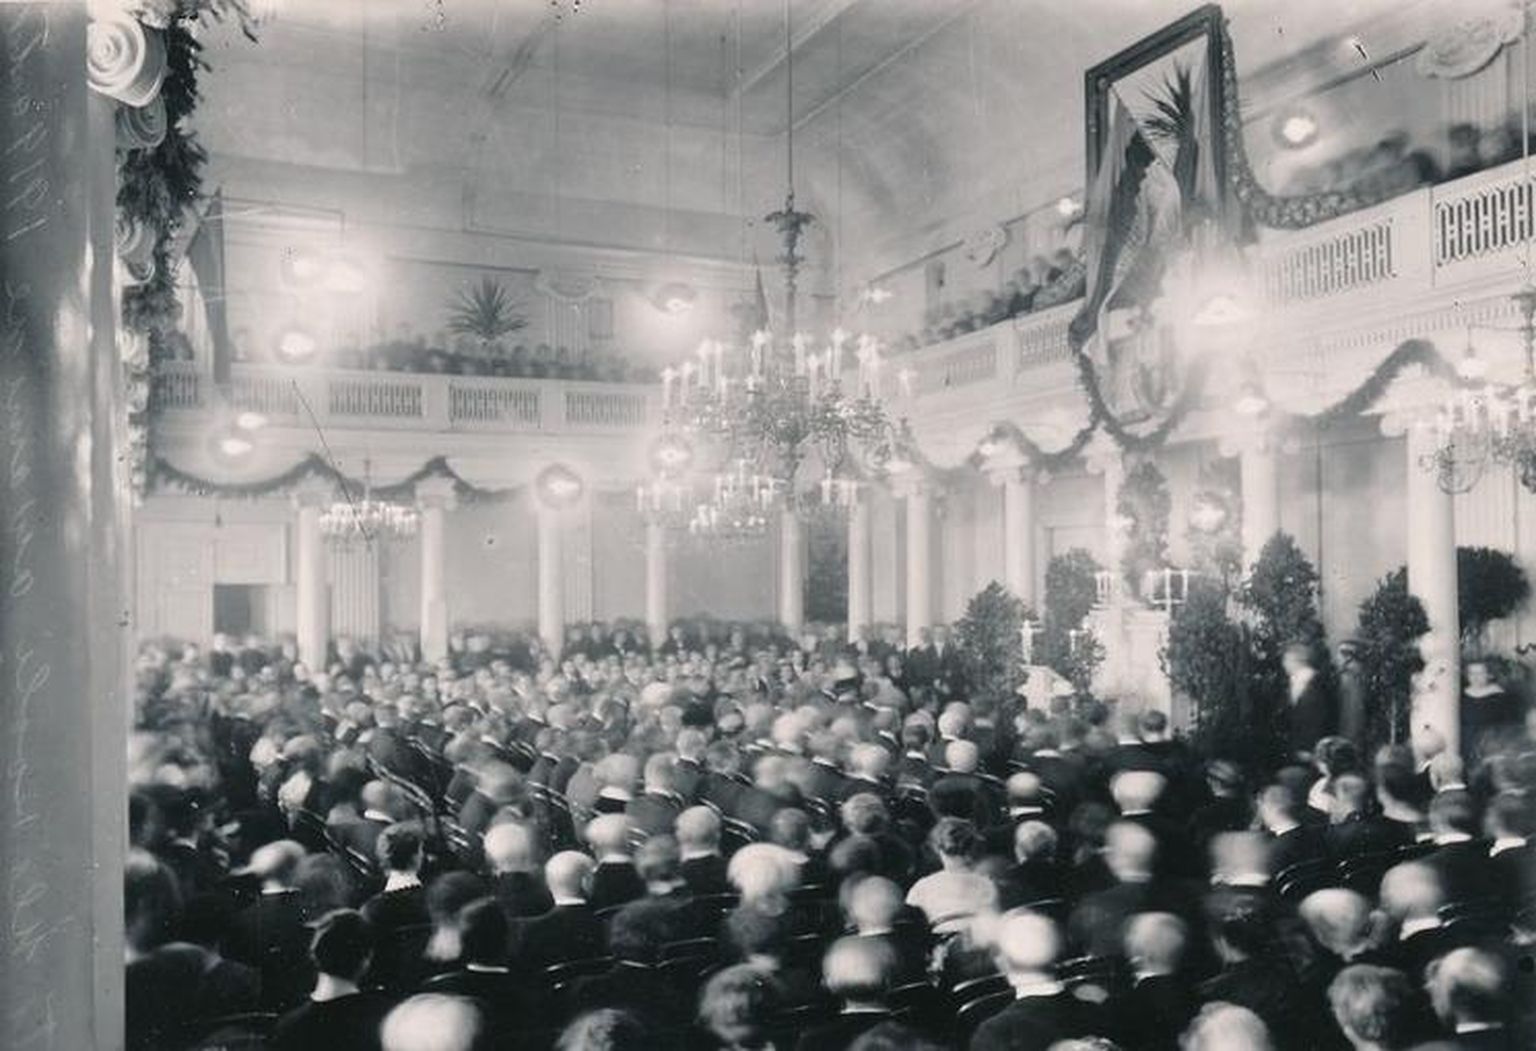 Üks väheseid säilinud ülesvõtteid Tartu ülikooli 1919. aasta 1. detsembri aktusest. Aula oli puupüsti rahvast täis, mis pole ka ime, sest väidetavalt olnud kohal 1500 inimest.